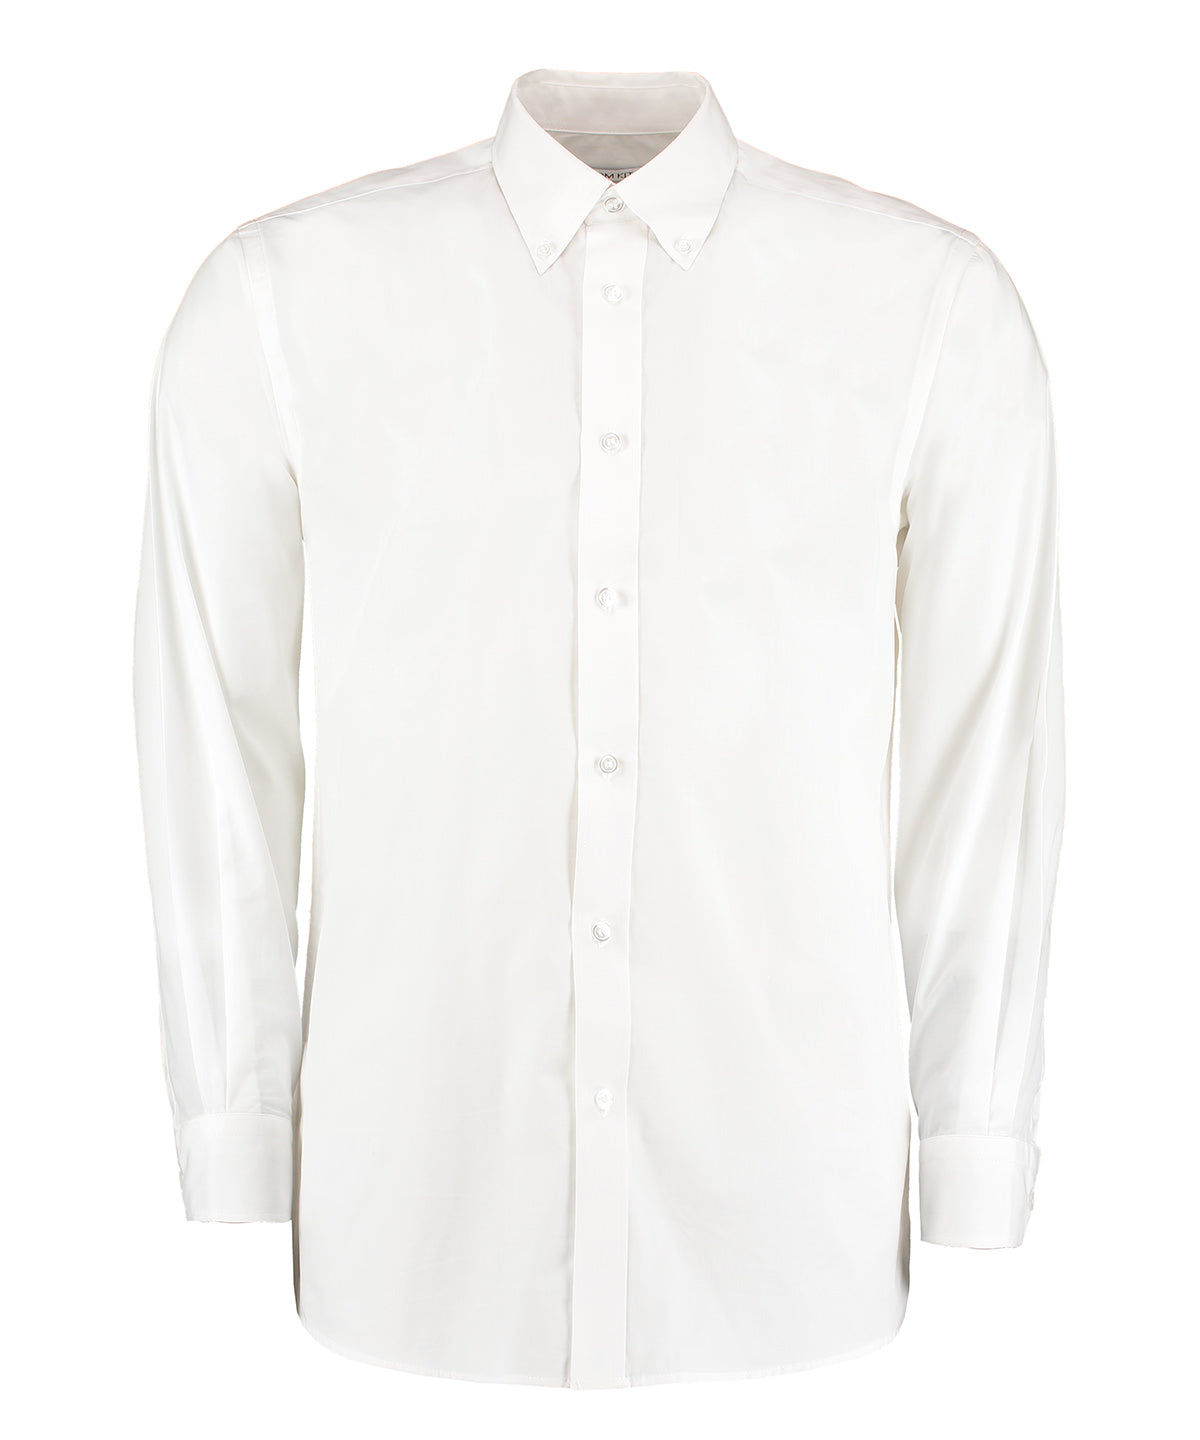 Kustom Kit Workforce shirt long-sleeved